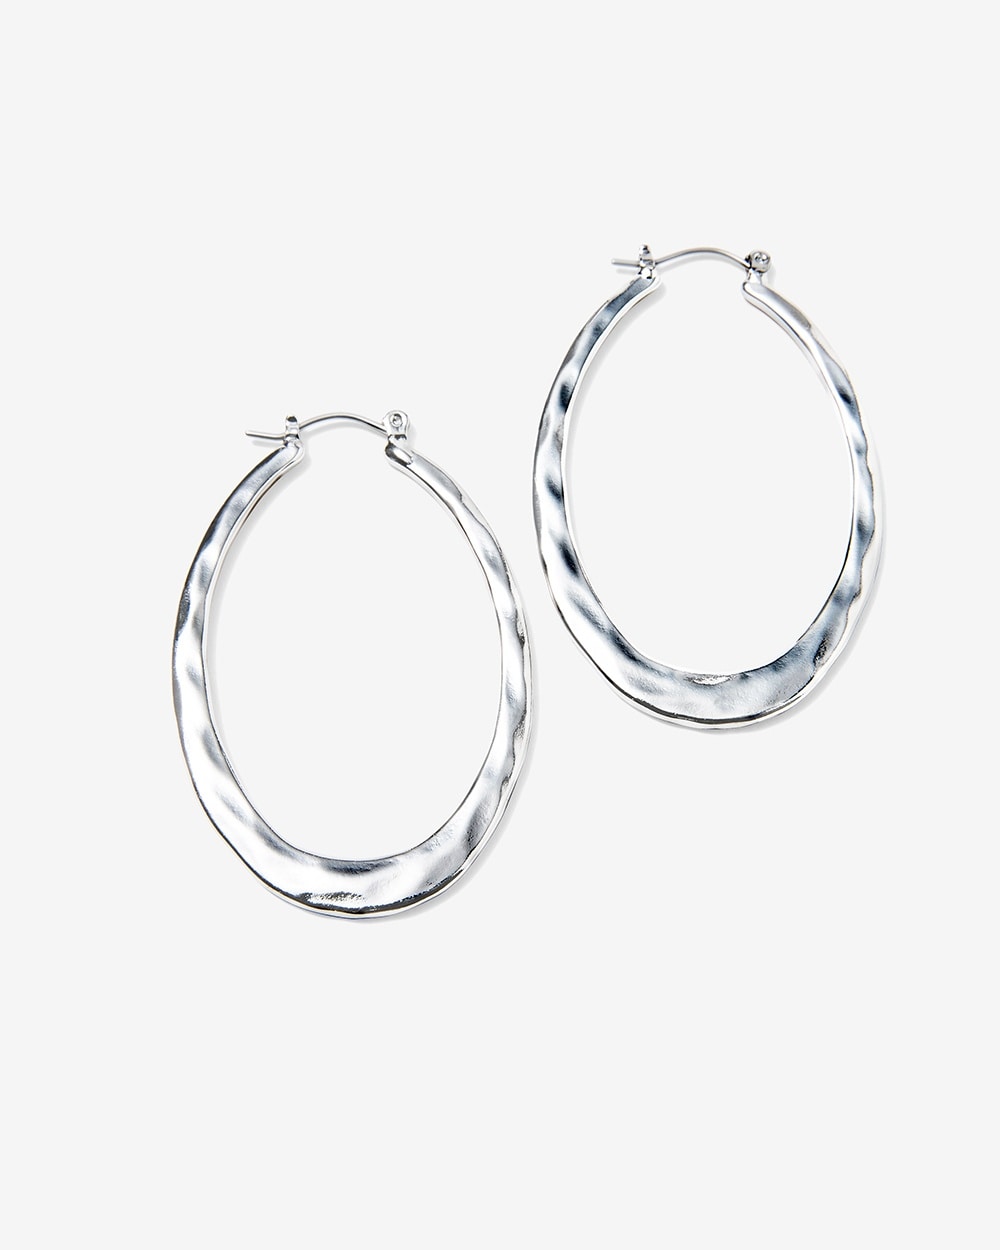 Hammered Oval Hoop Earrings